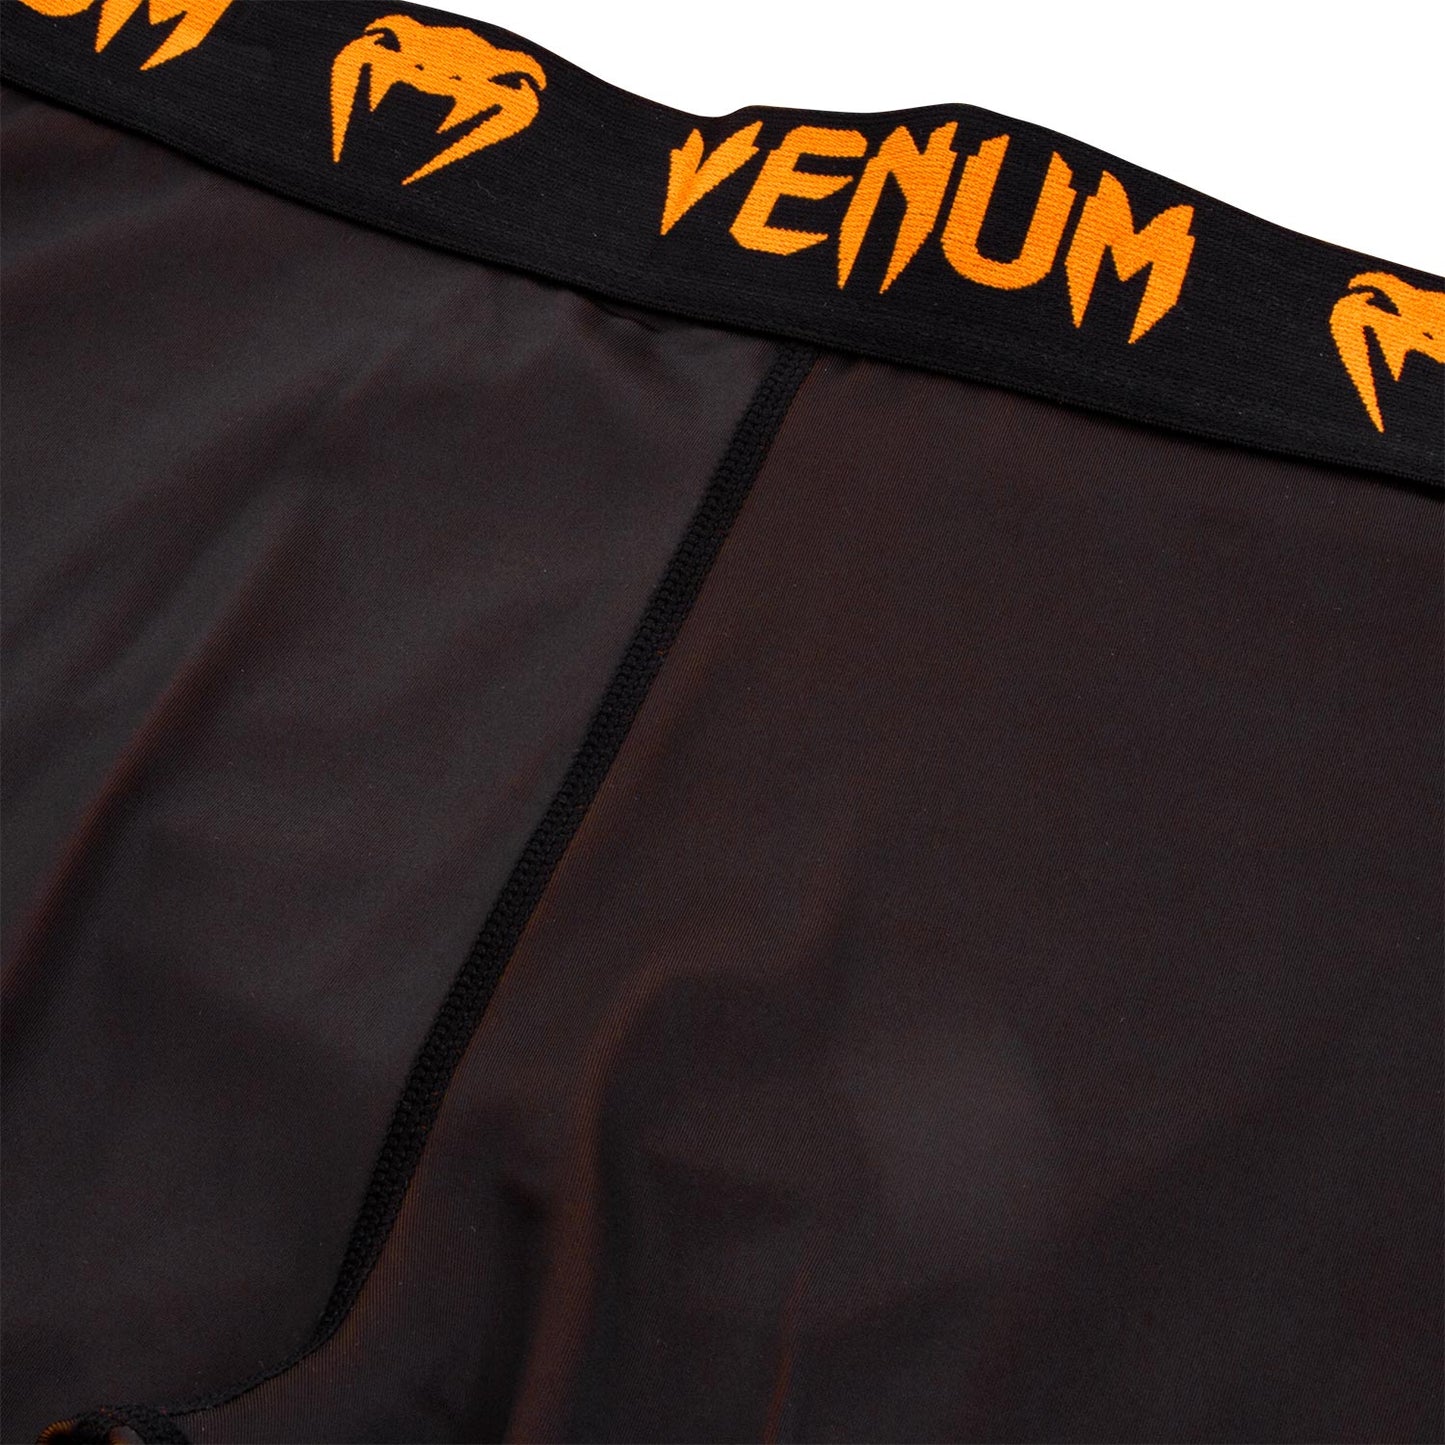 Pantalon de Compression Venum Giant - Pantalons de compression